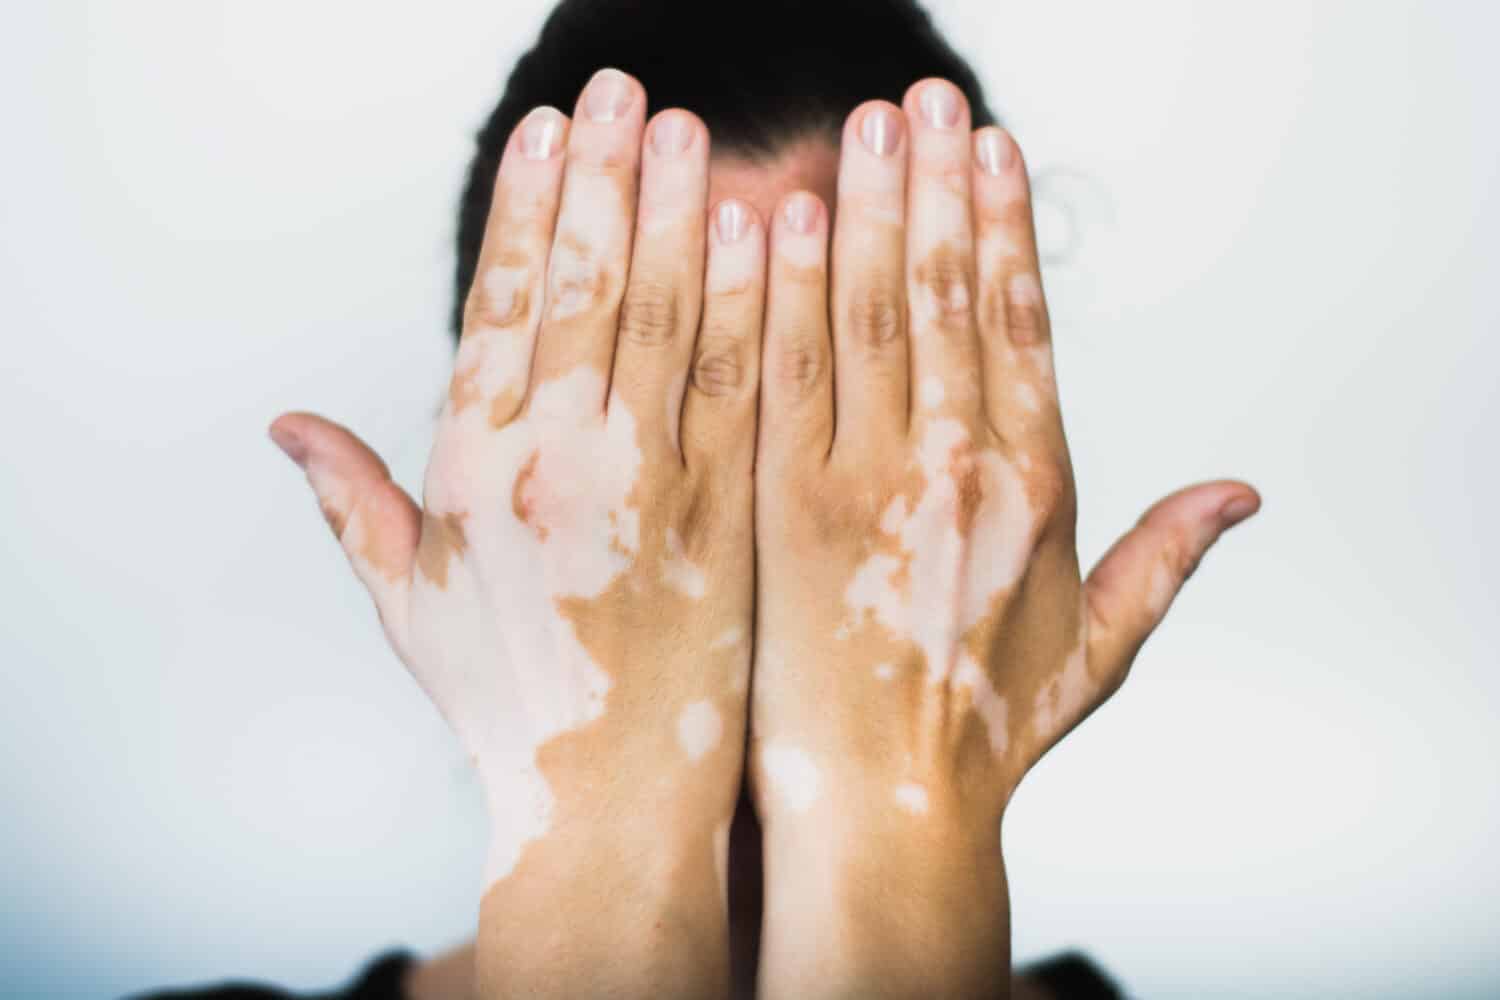 Close-up of hands with vitiligo